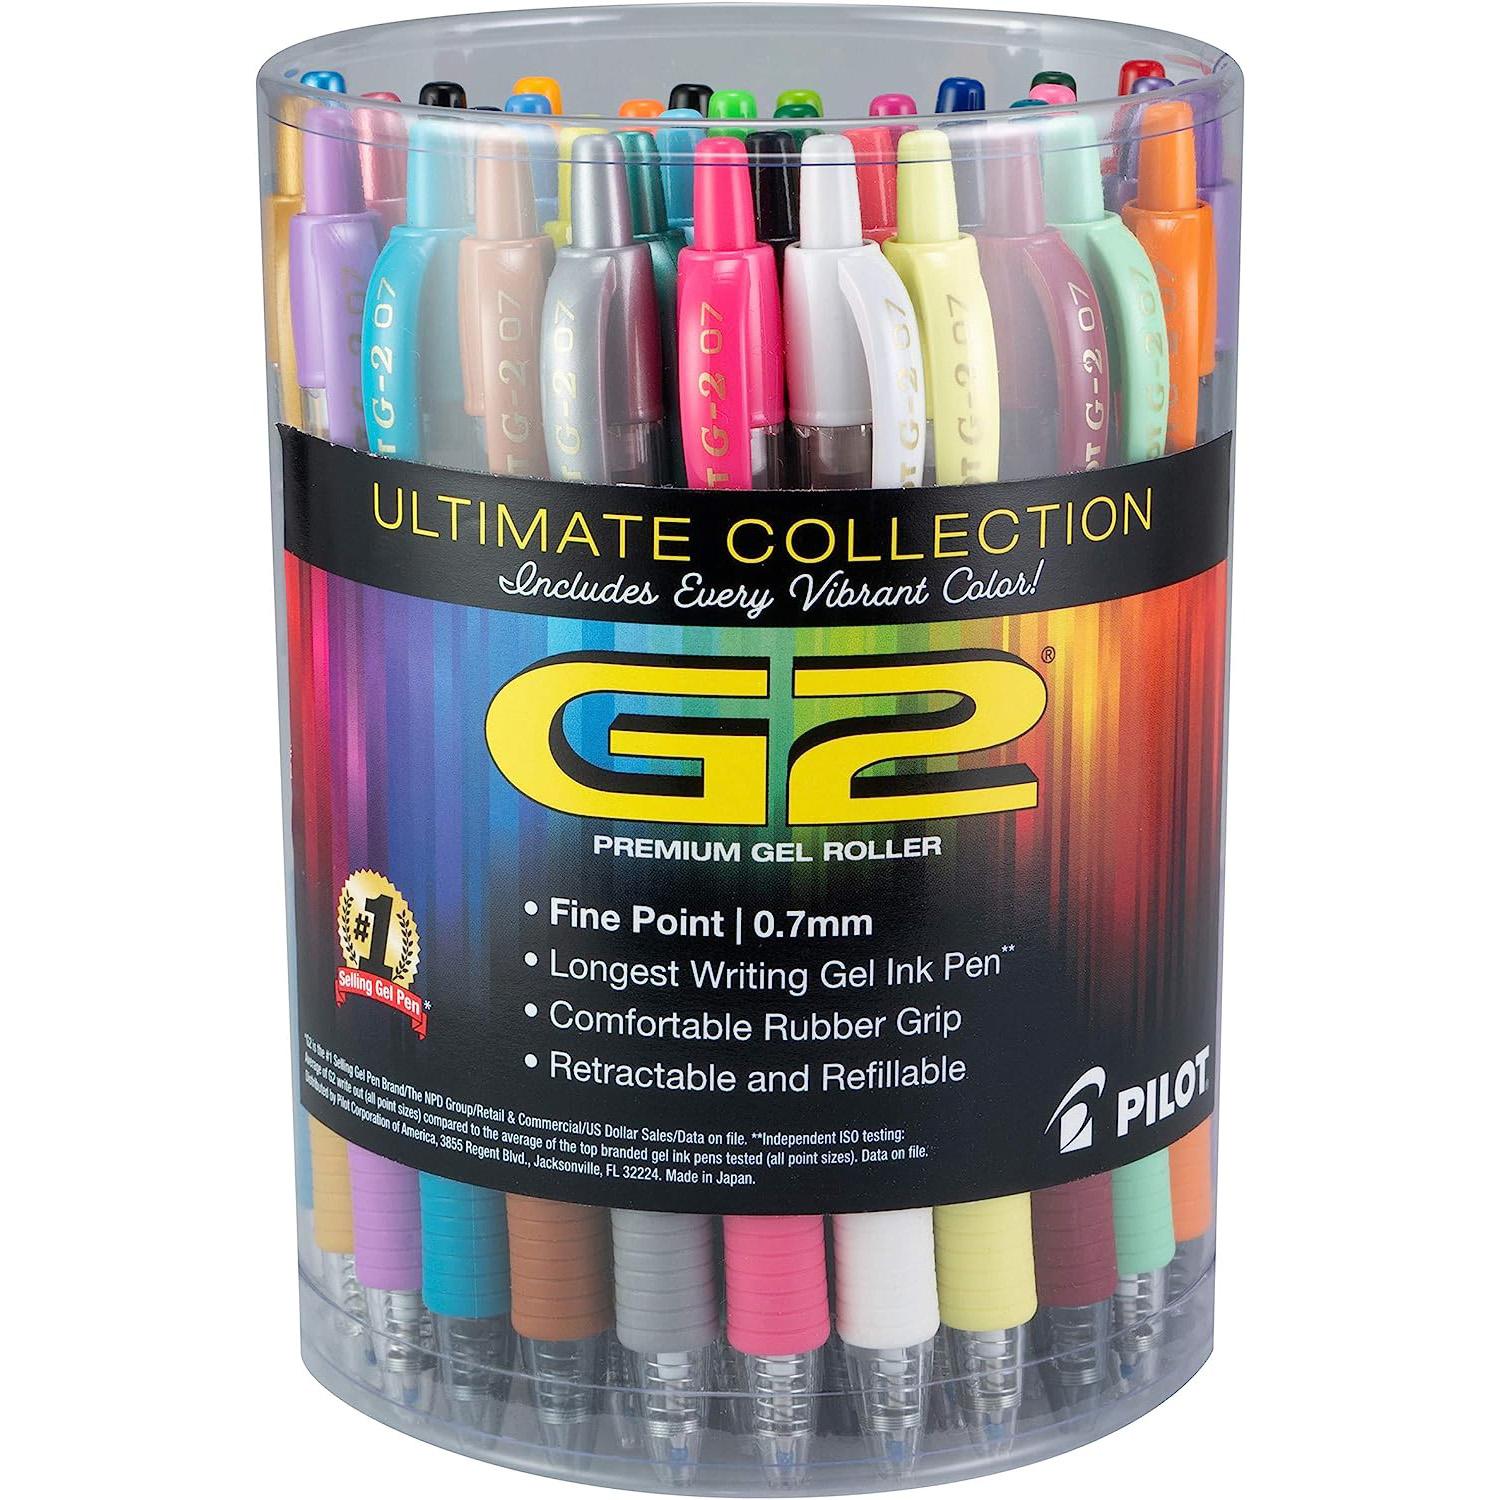 Pilot G2 Premium Gel Roller Pens 36 Pack for $21.55 Shipped